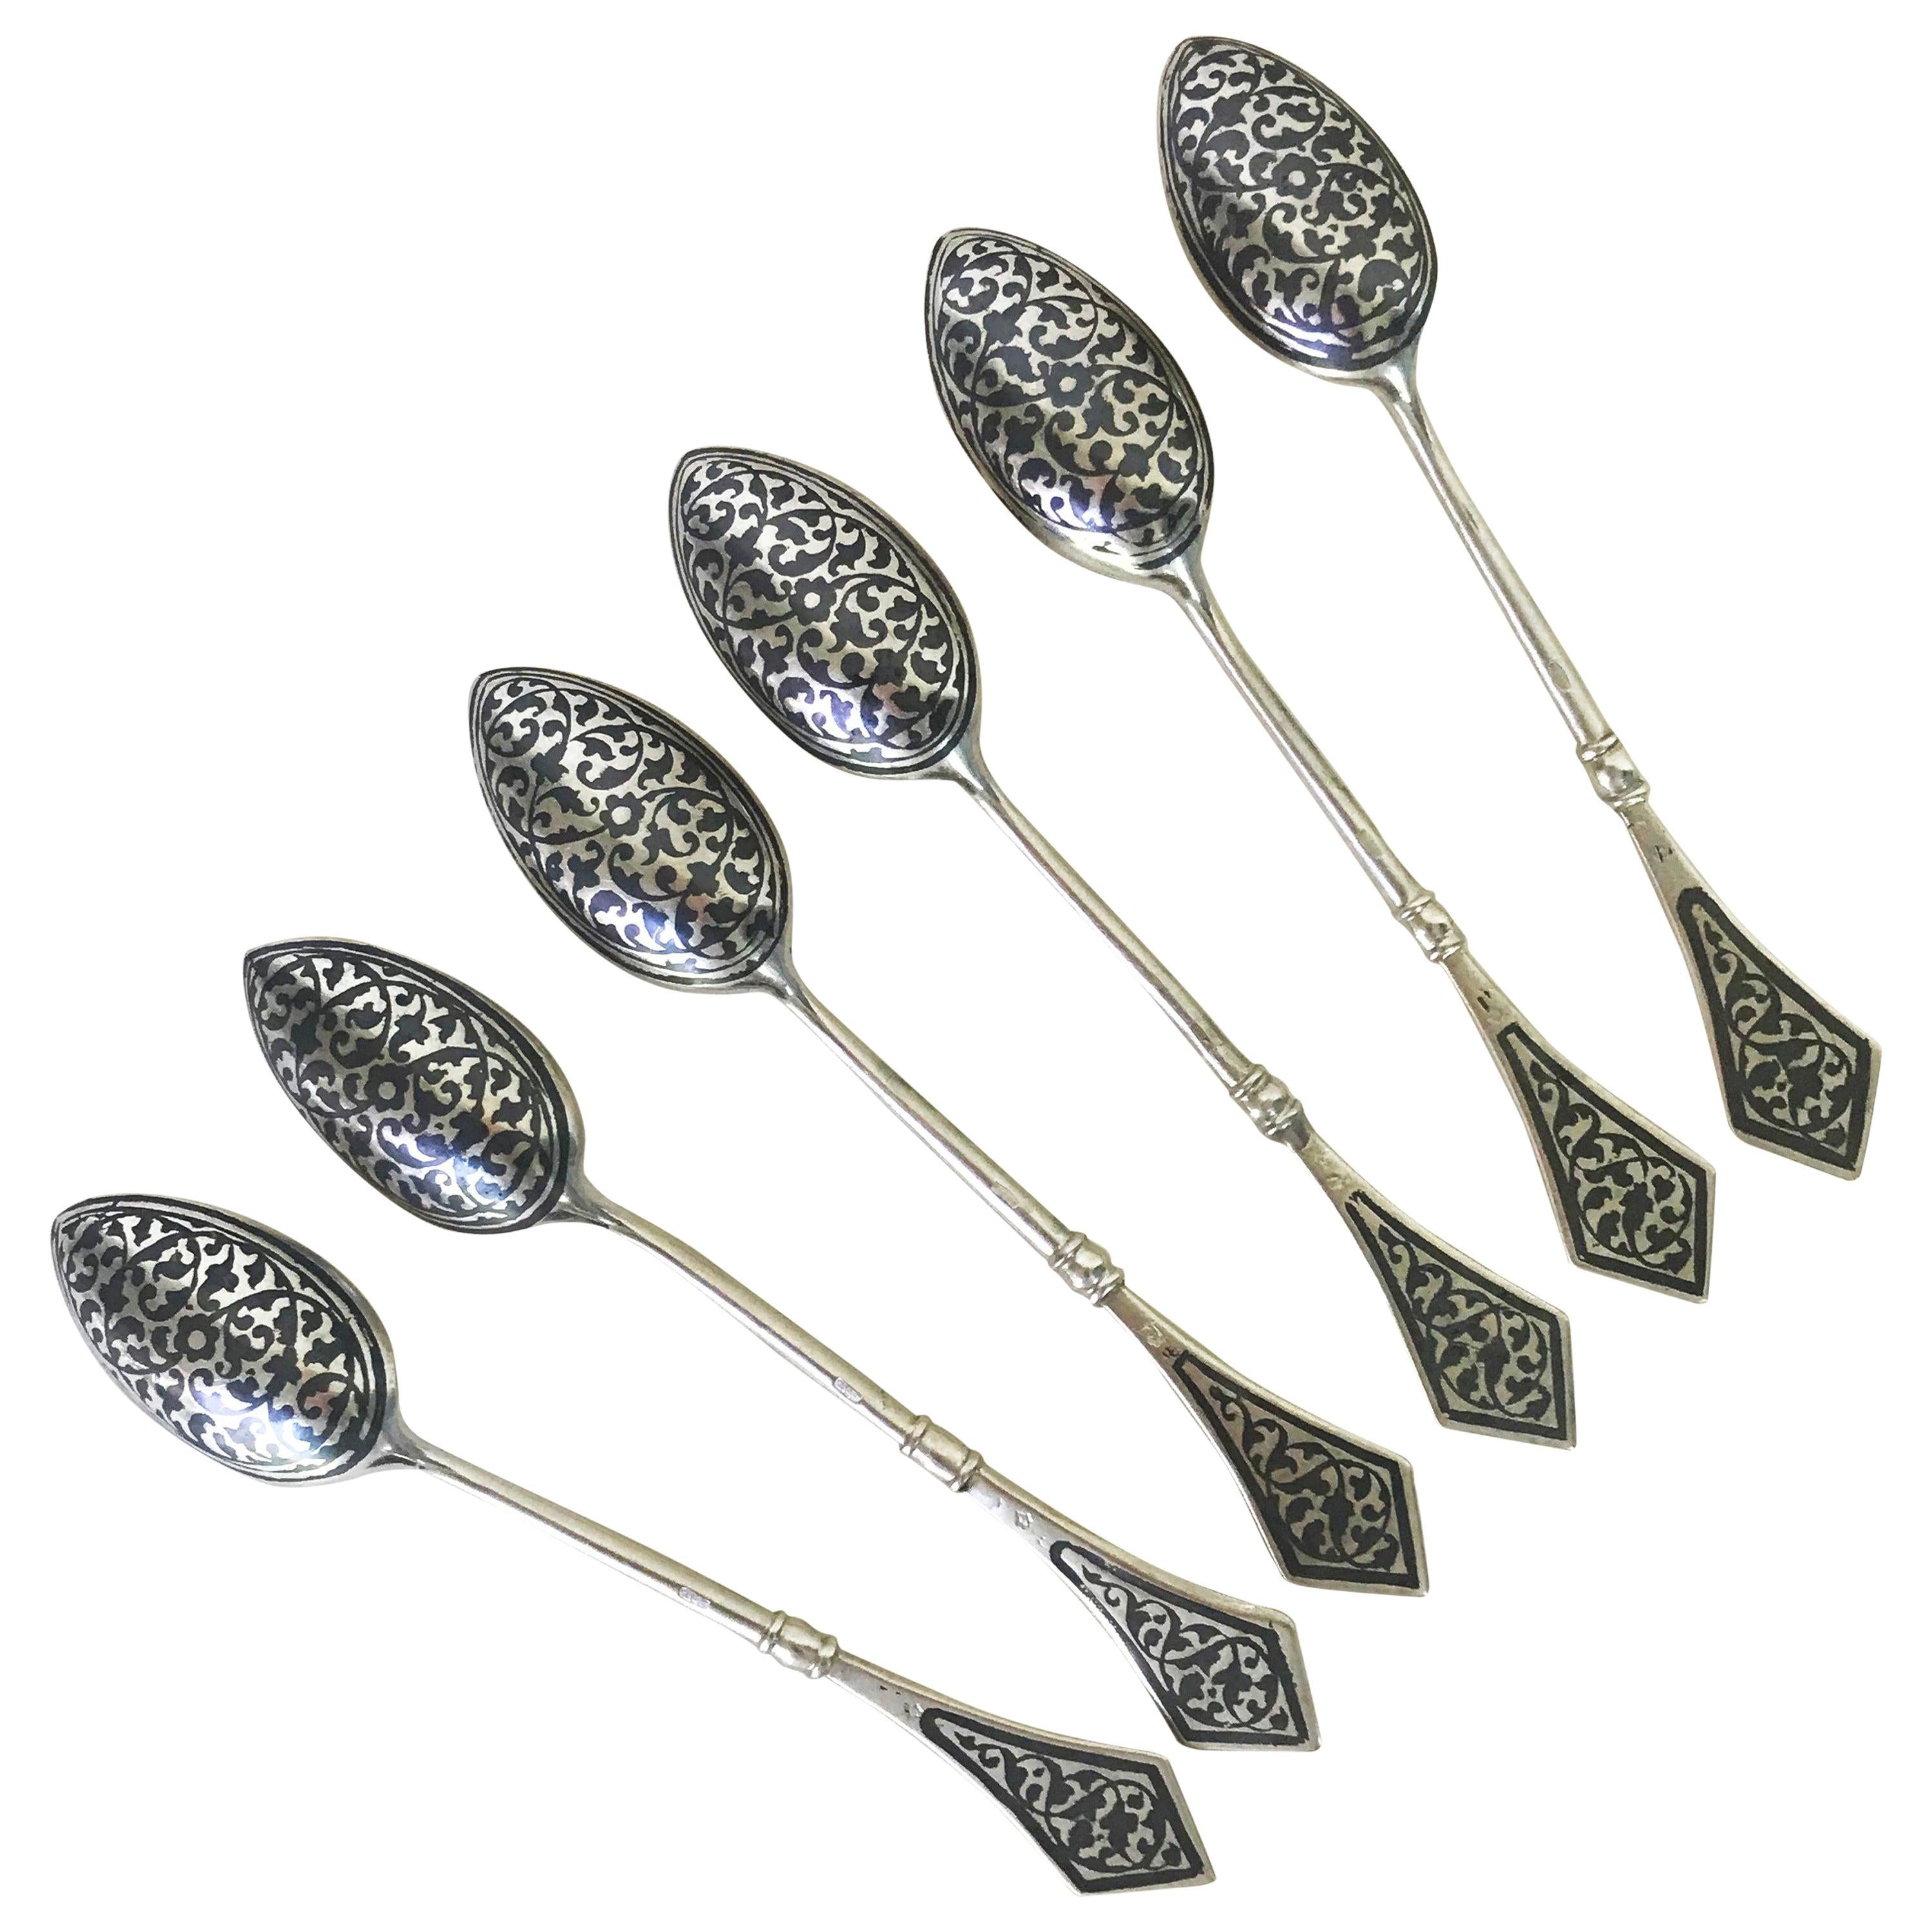 Fine Vintage Unique Sterling Silver-Guilt Niello Russian Spoon Set